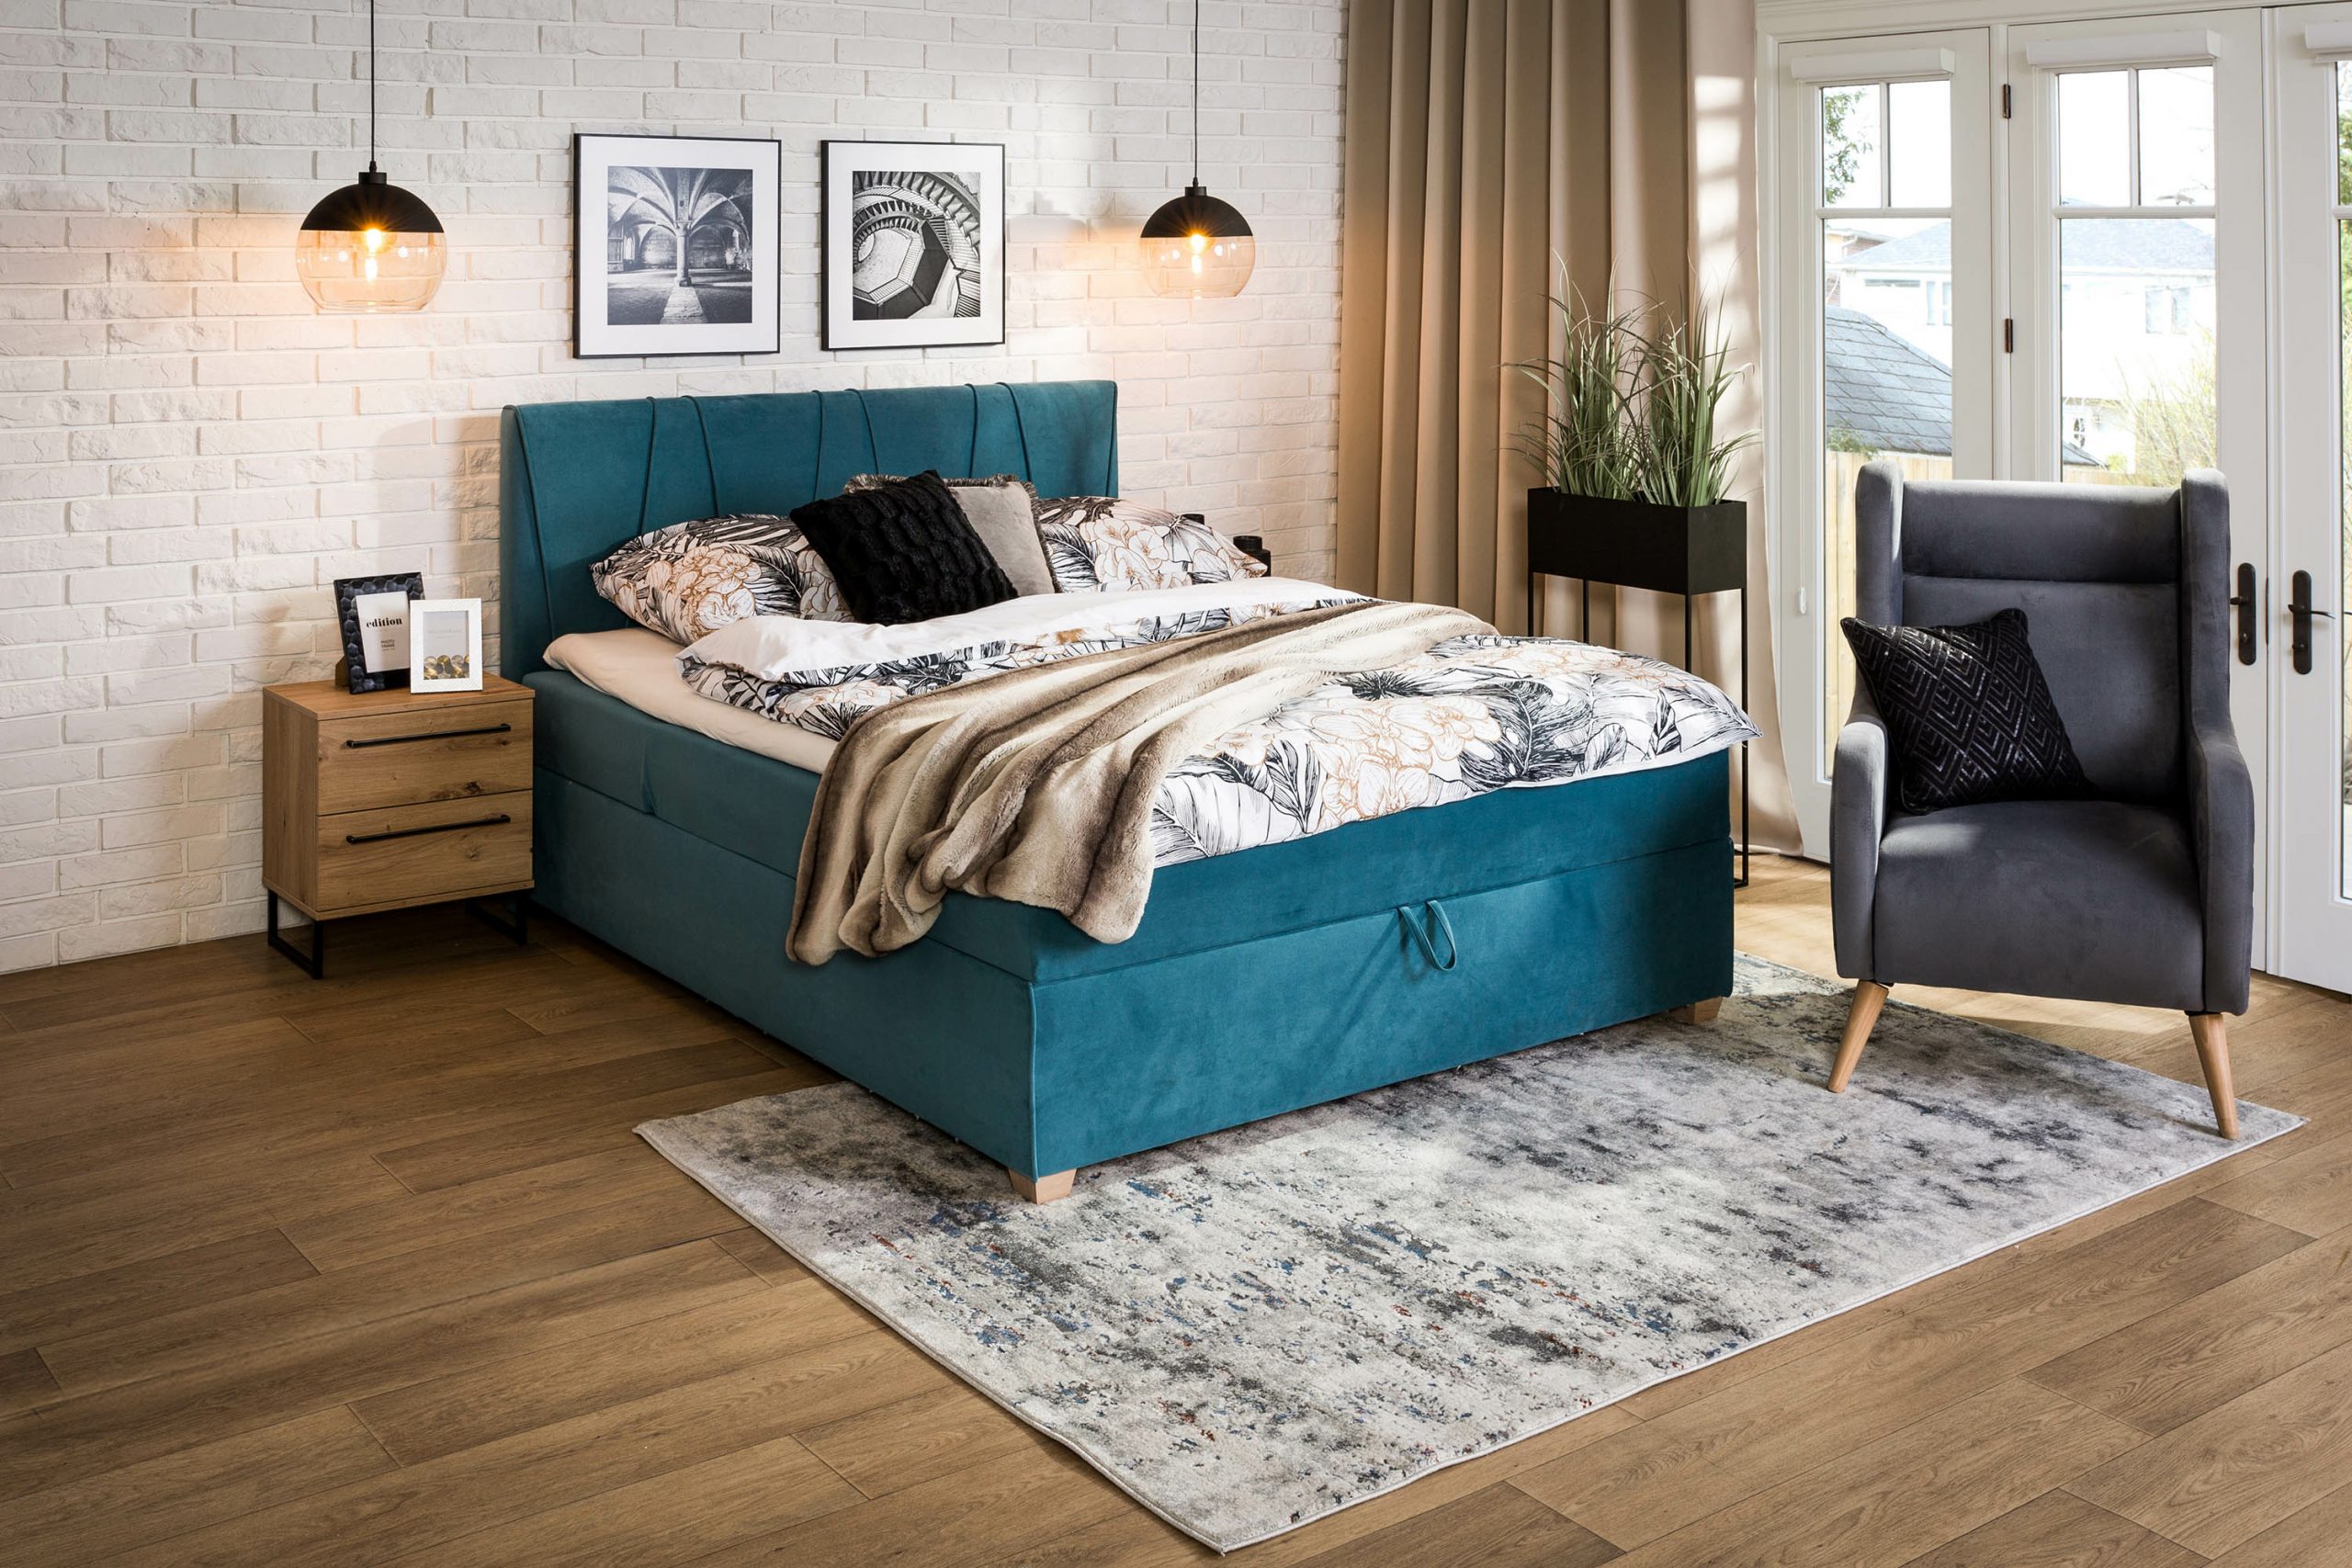 Jakie łóżko wybrać do sypialni urządzonej w stylu skandynawskim? Poznaj ciekawe propozycje